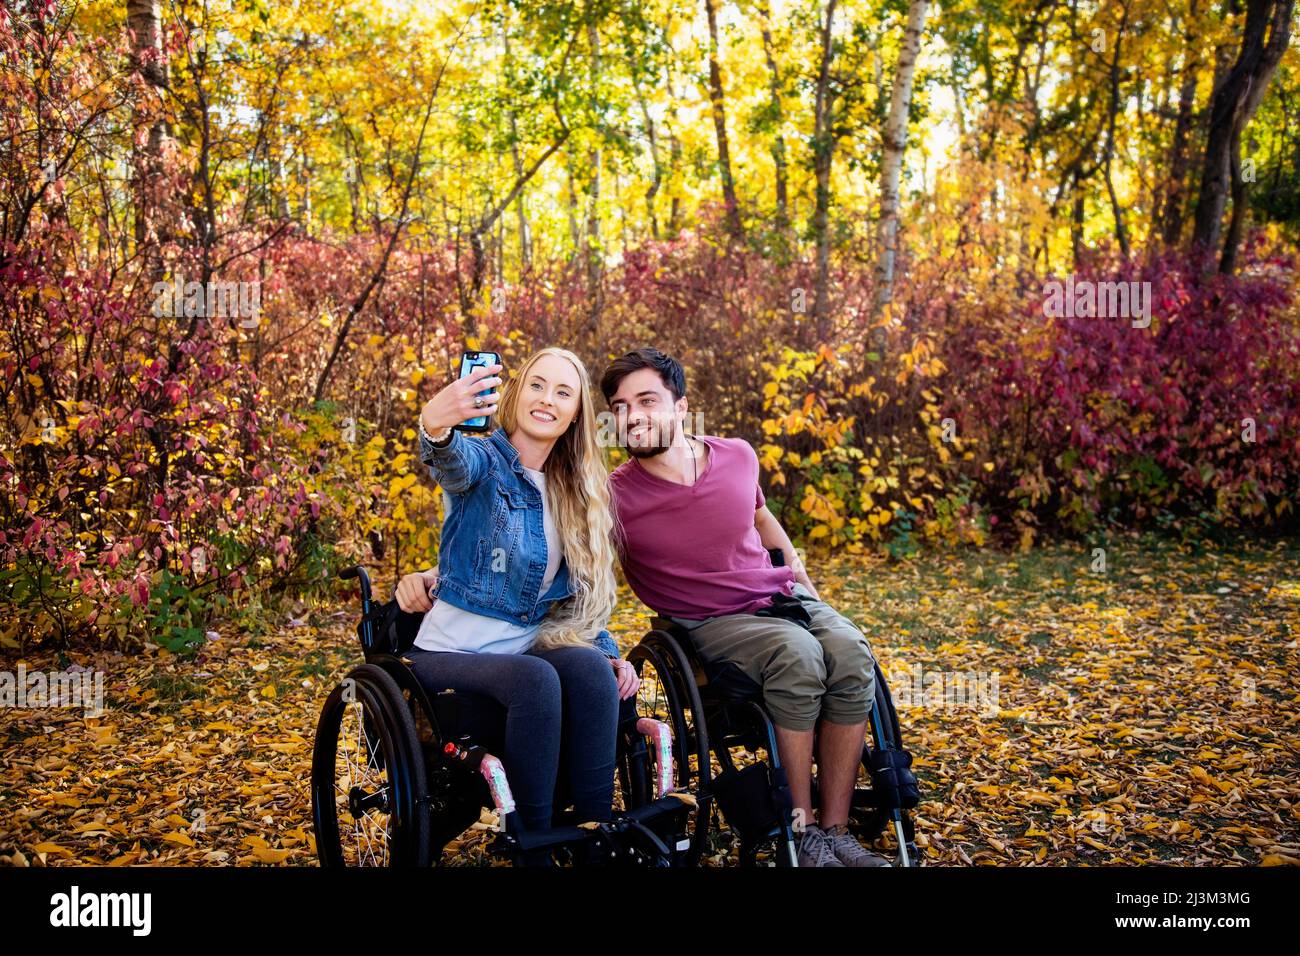 Ein junger querschnittsgelähmter Mann und eine junge Frau im Rollstuhl, die an einem schönen Herbsttag ein Selbstporträt mit einem Smartphone in einem Park machen Stockfoto